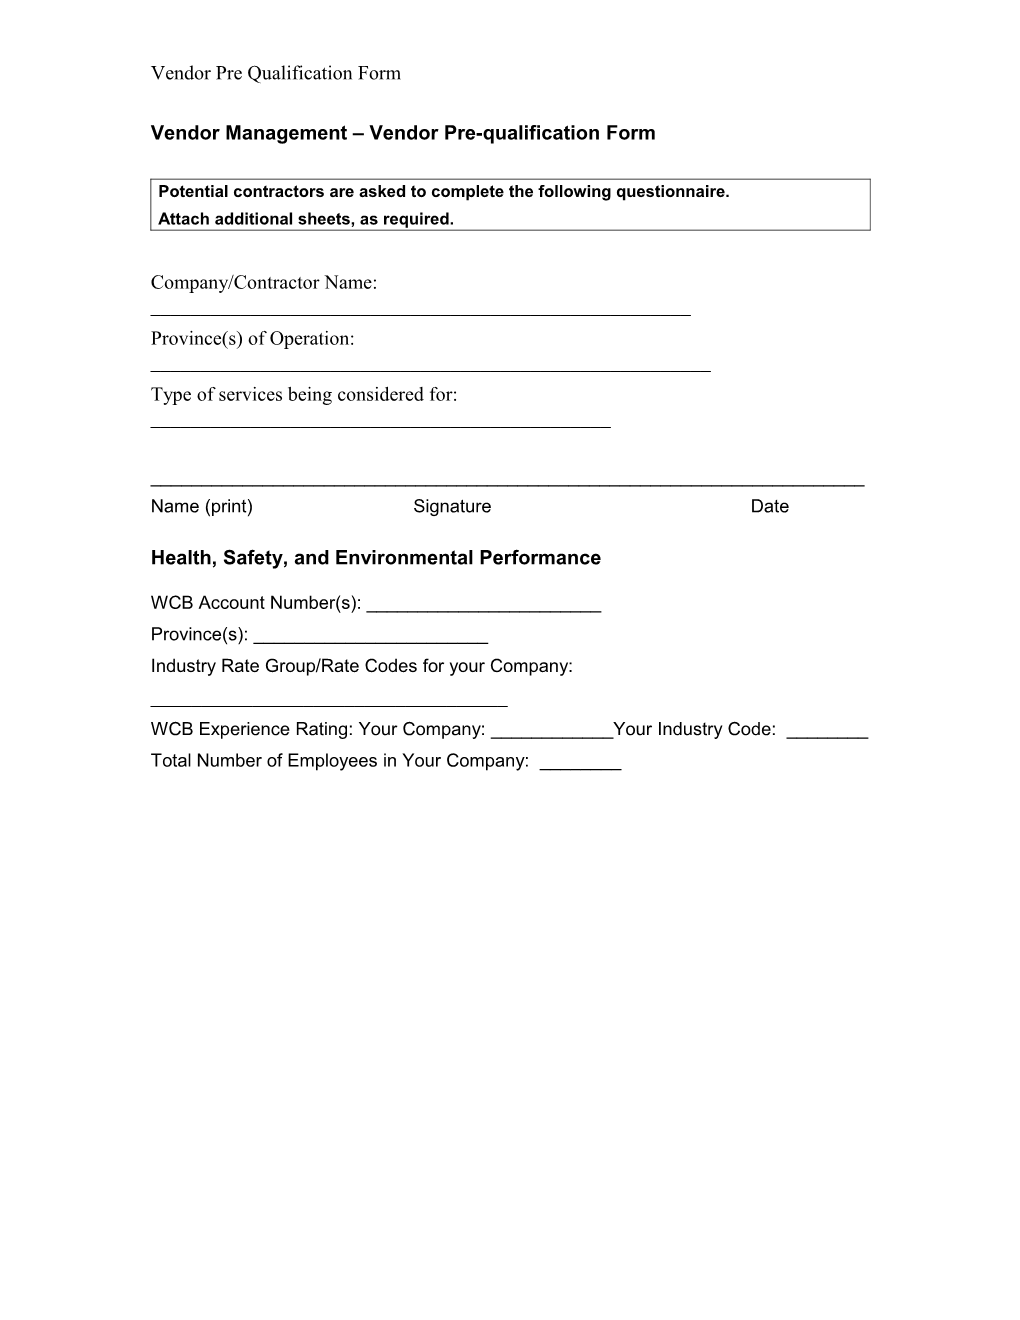 Vendor Management Vendor Pre-Qualification Form